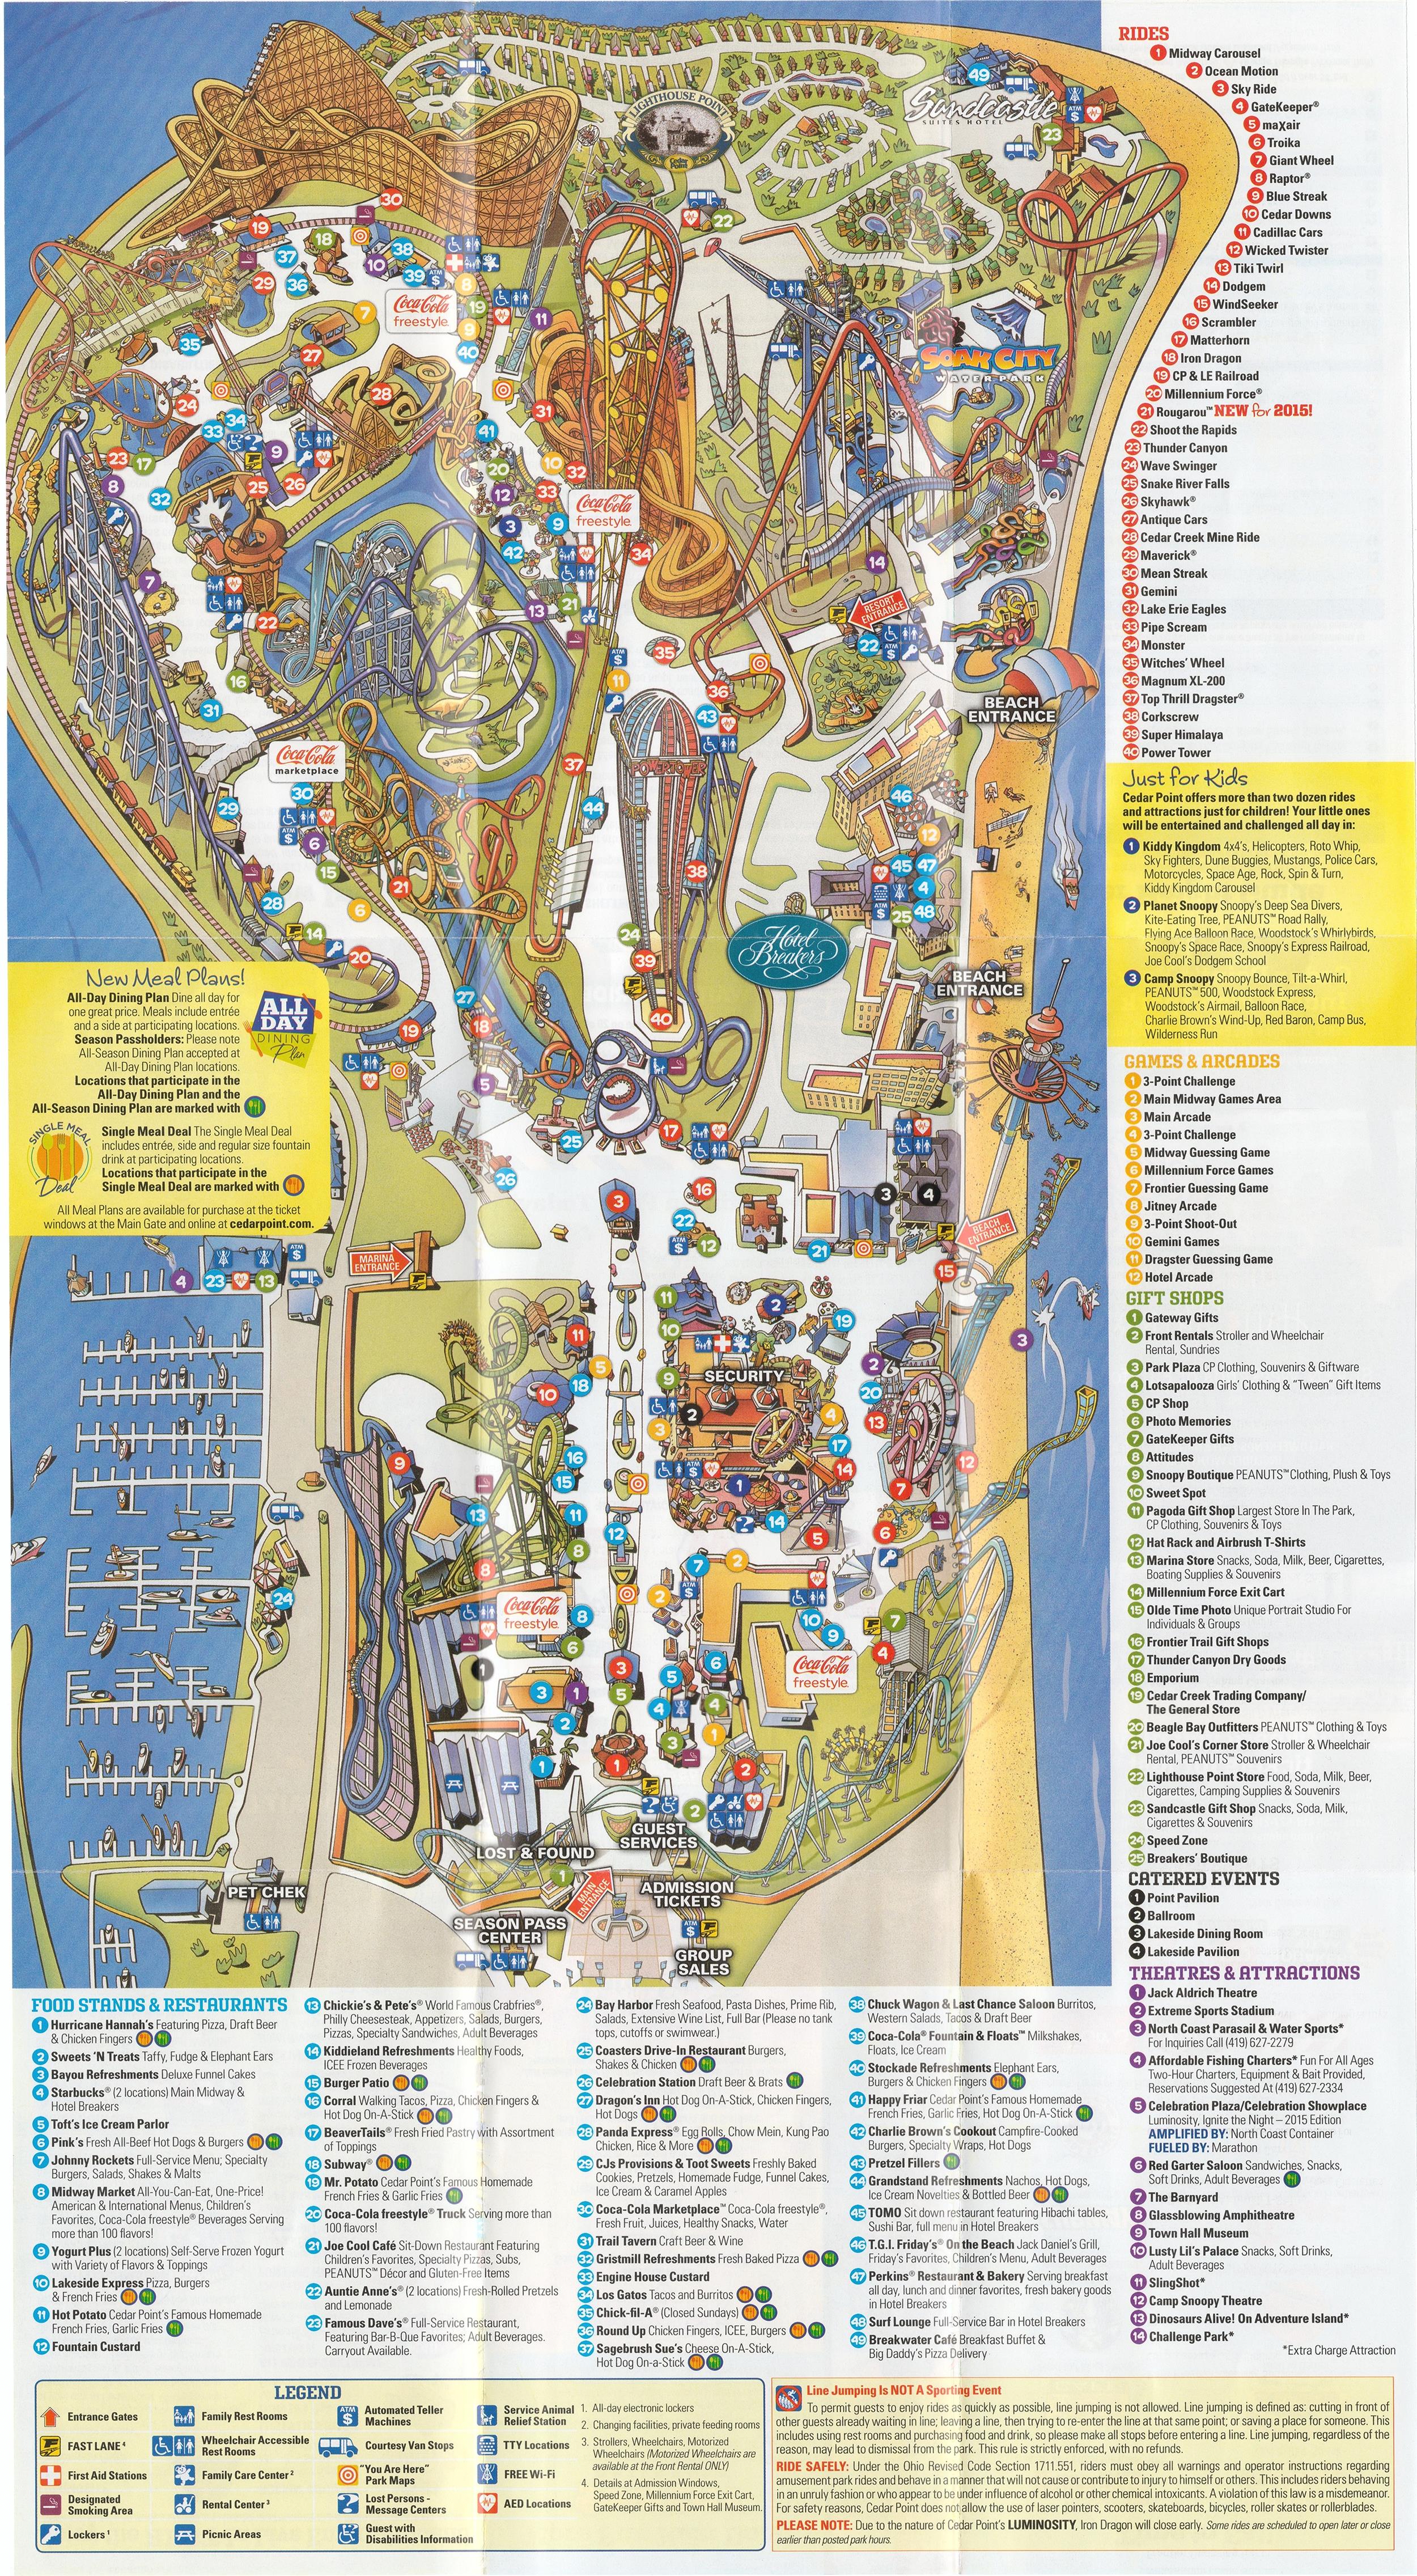 Printable Cedar Point Map